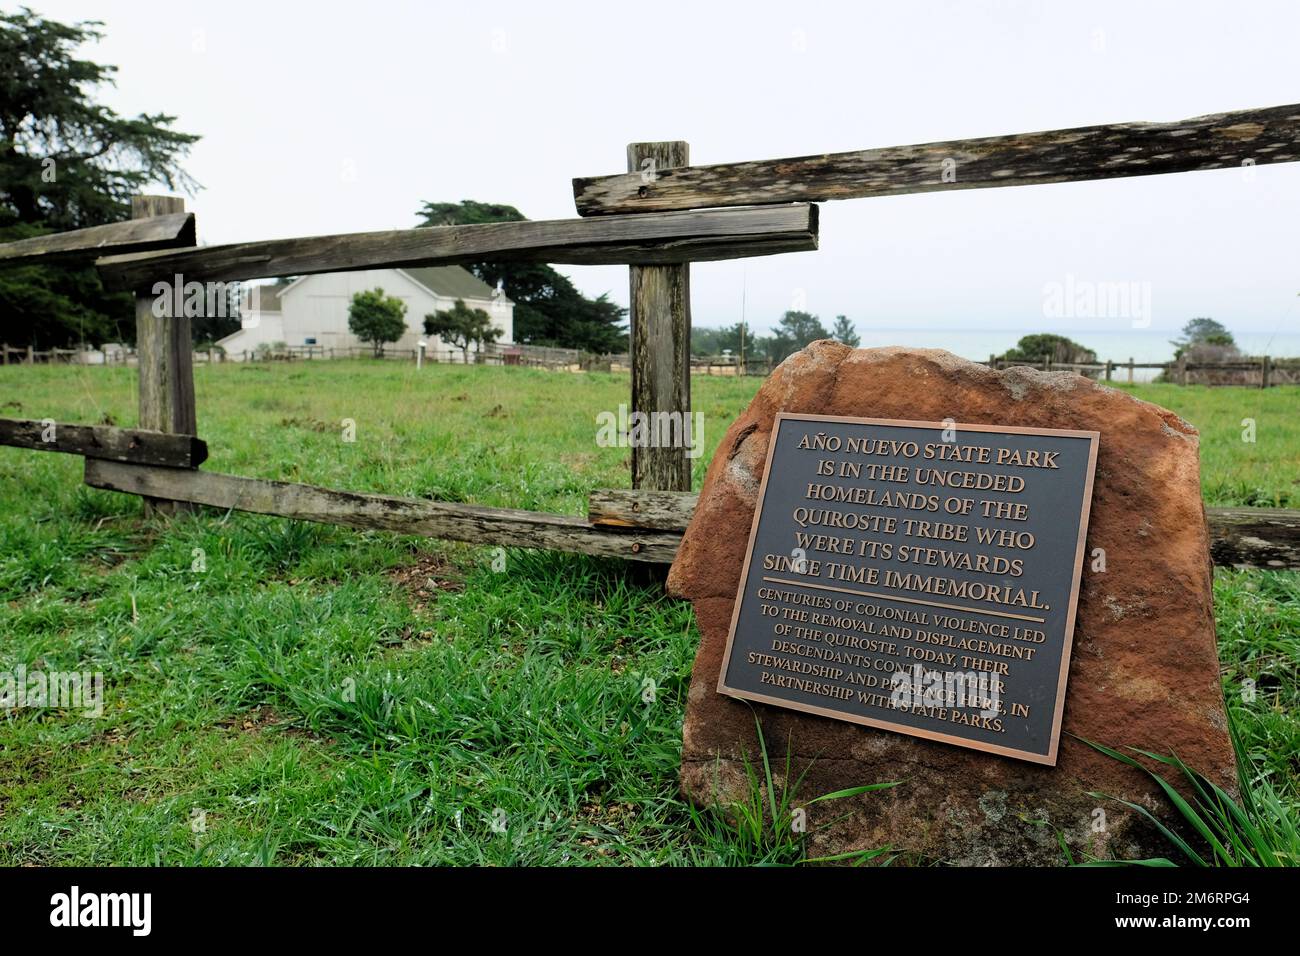 Riconoscimento delle terre indigene al parco statale Año Nuevo nella contea di San Mateo, California; riconoscimento della violenza coloniale della popolazione di Quiroste. Foto Stock